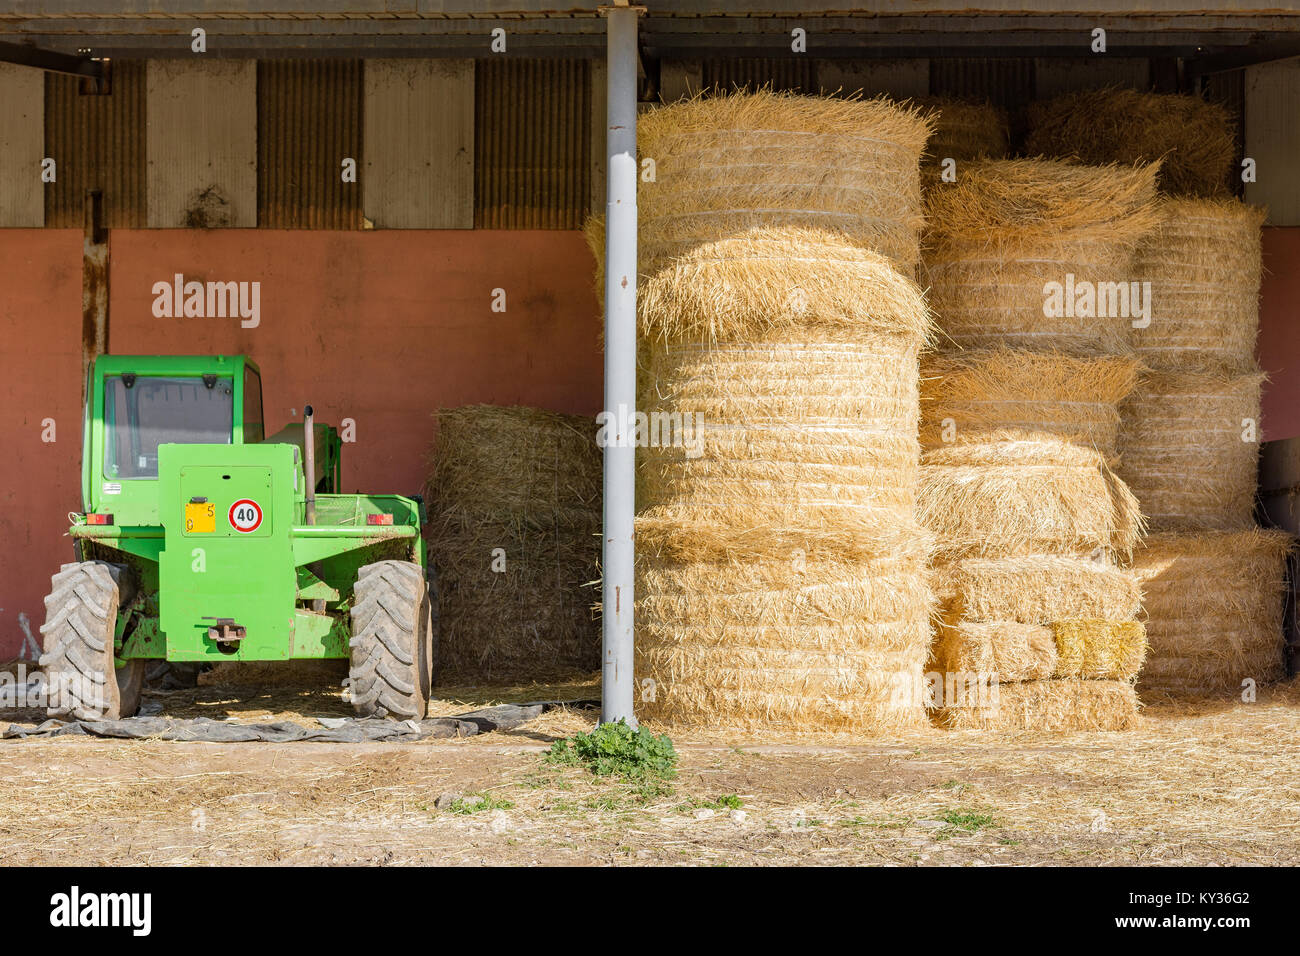 Farm bails of hay Stock Photo